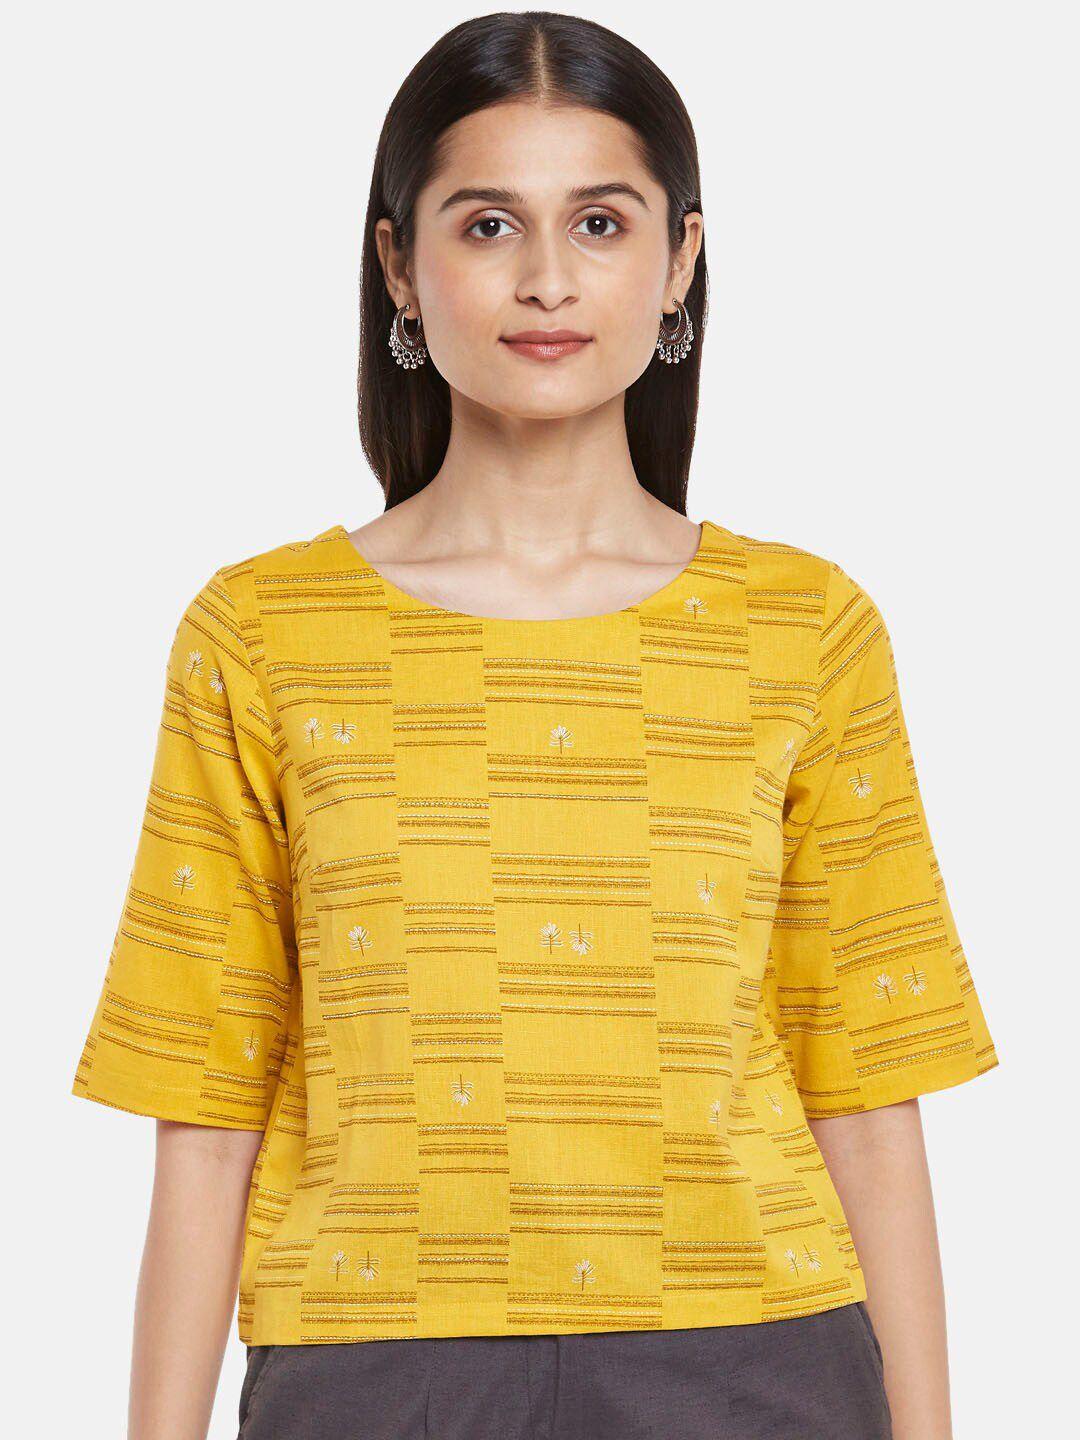 akkriti by pantaloons mustard yellow striped top